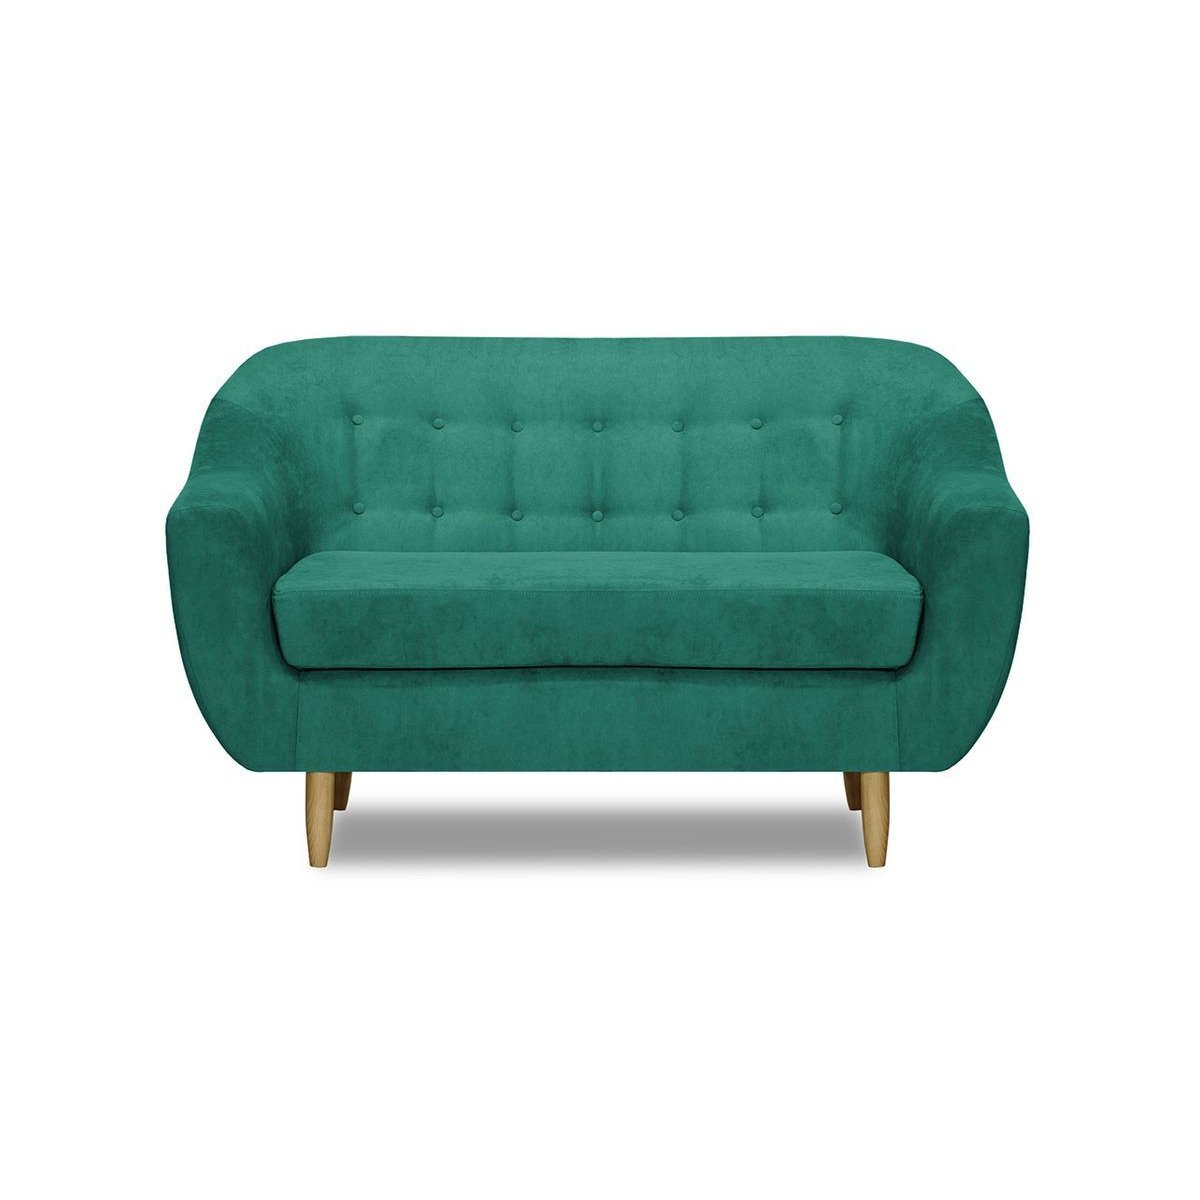 Bont 2 Seater Sofa, turquoise - image 1